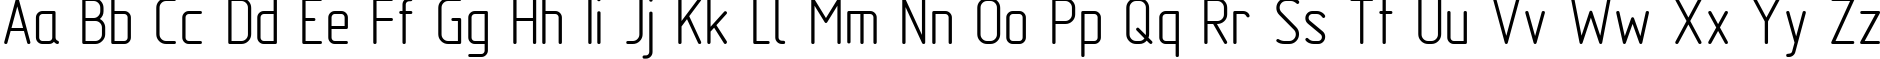 Пример написания английского алфавита шрифтом GOST Type AU